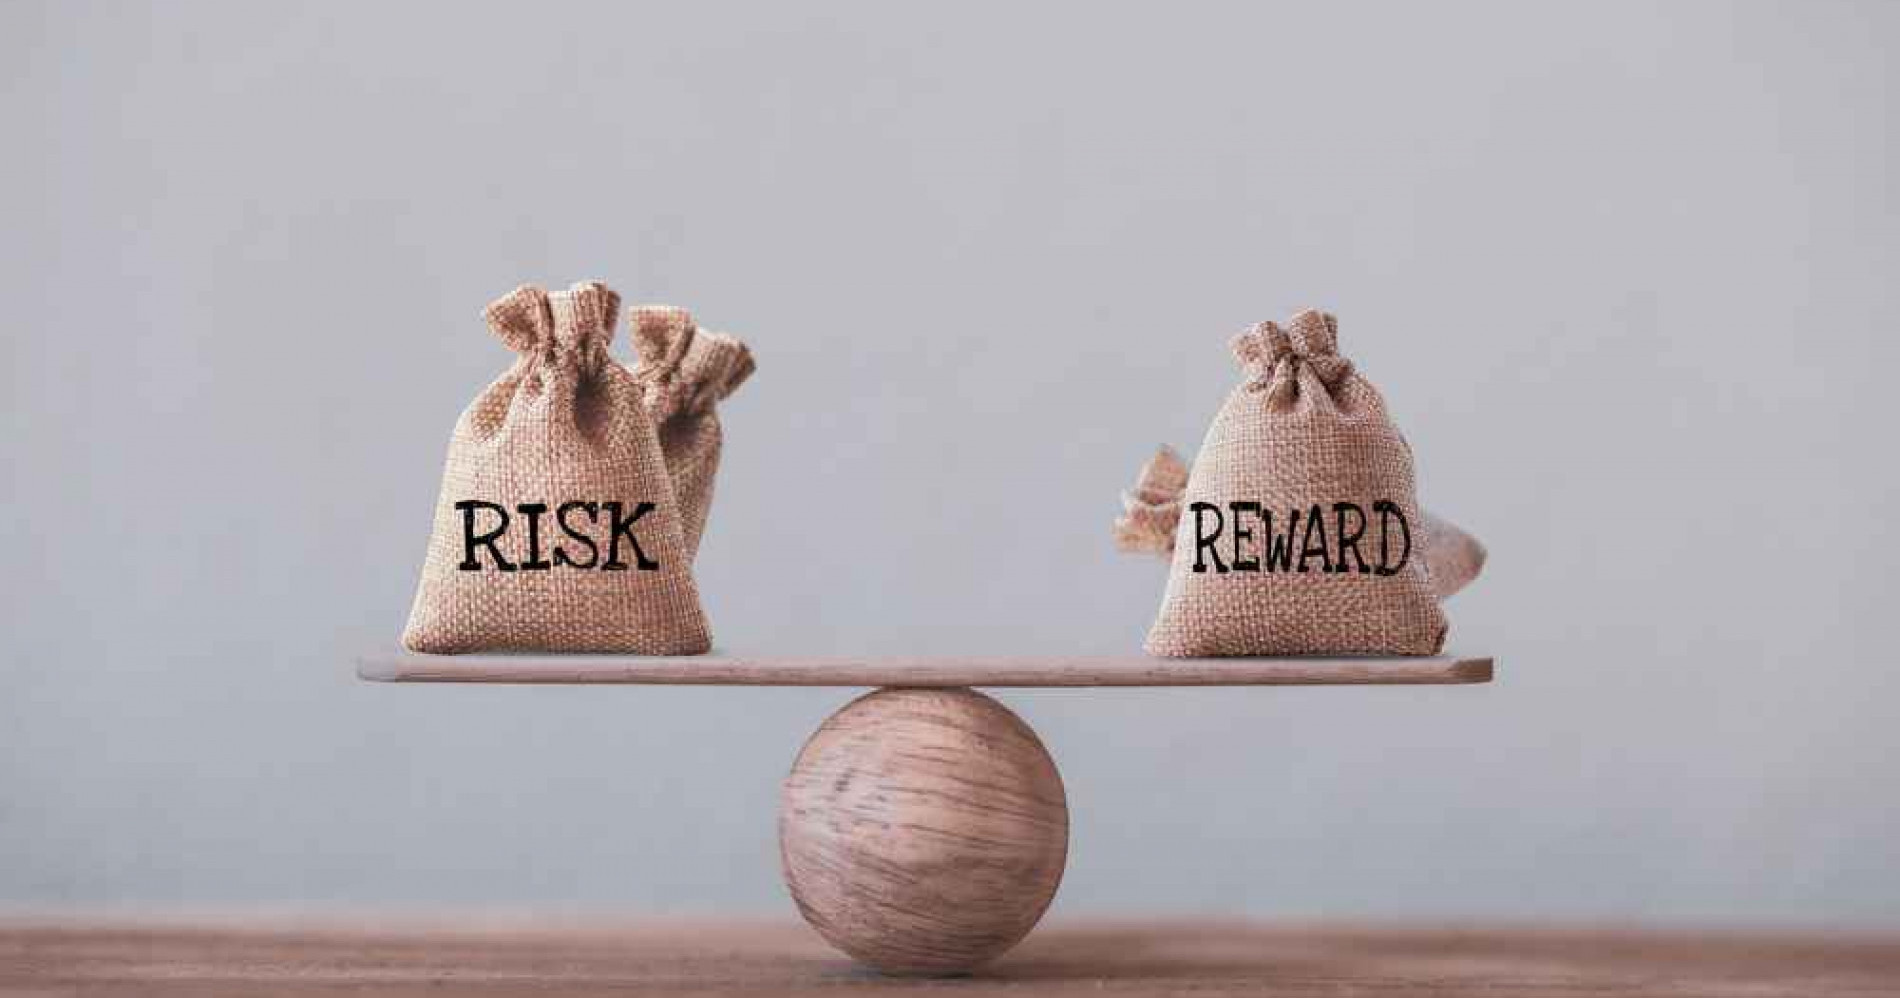 Investor wajib mengukur risk-reward dalam berinvestasi (Sumber Gambar: IStock)